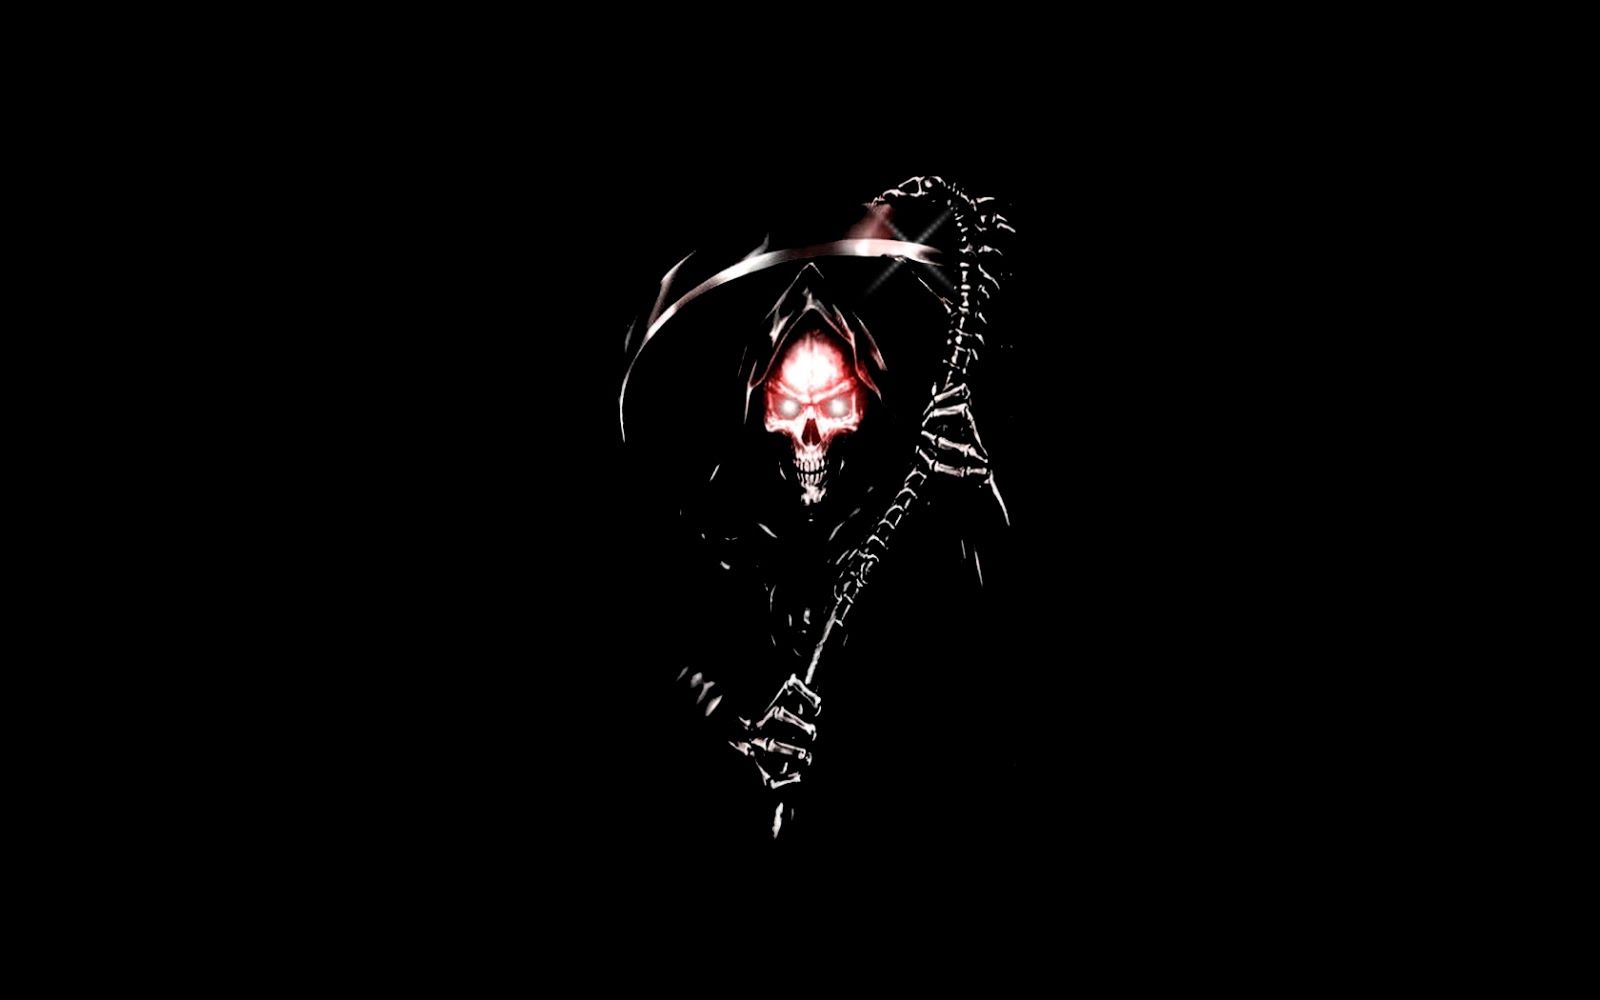 Grim Reaper Background HD. Grim Reaper Wallpaper, Thanksgiving Pilgrim Wallpaper and Scary Grim Reaper Wallpaper